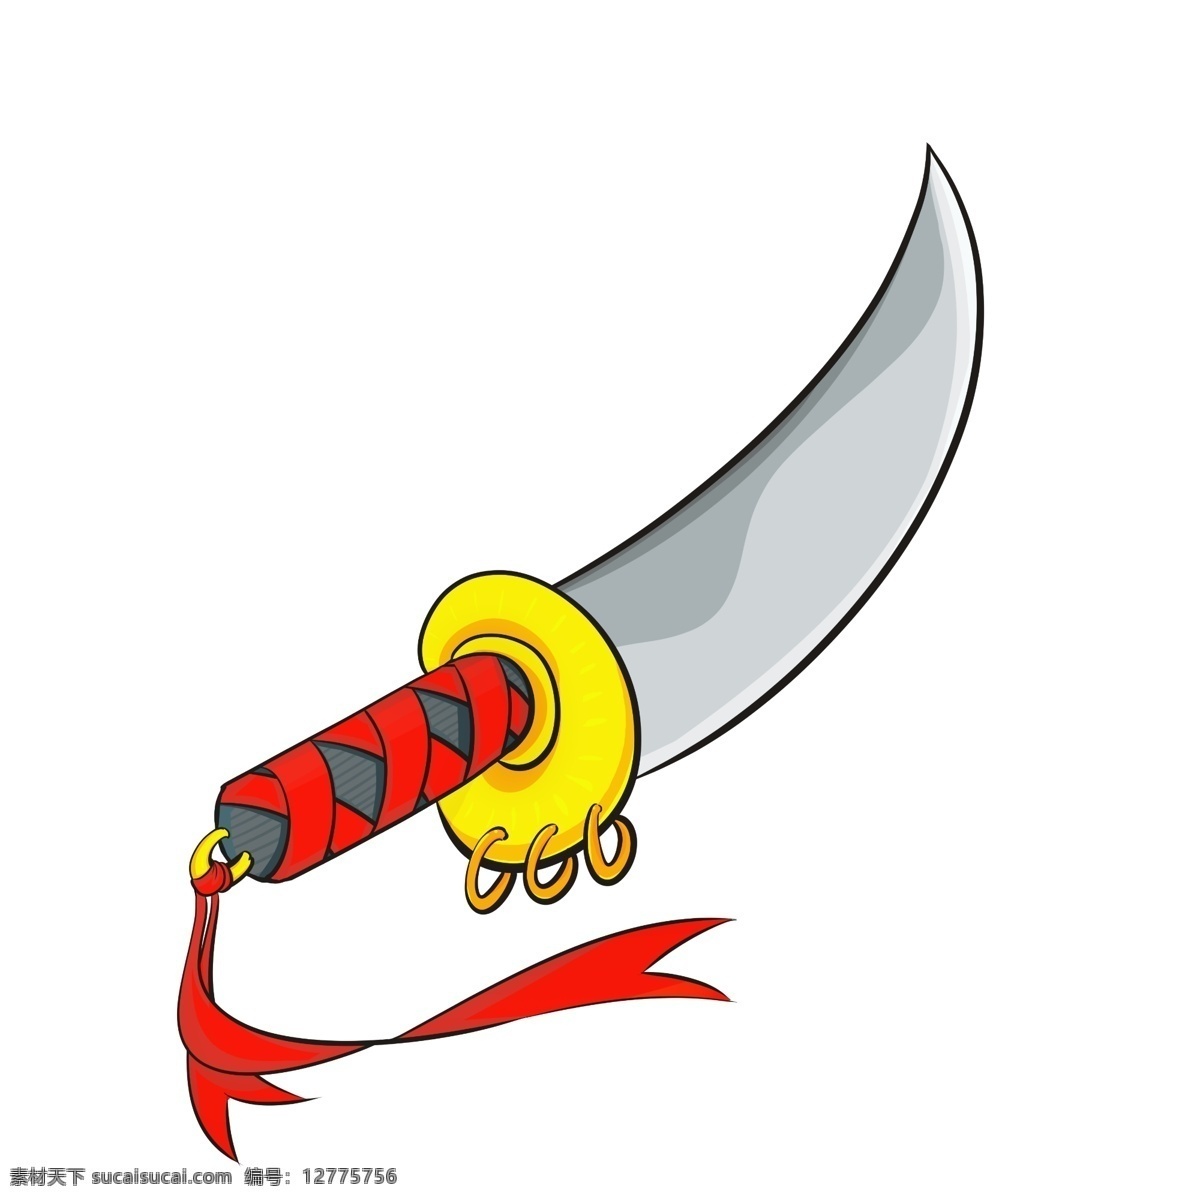 锋利 游戏 宝剑 插画 宝剑插画 一把宝剑 锋利的宝剑 游戏宝剑 剑 红色 黄色 红丝带 刀剑